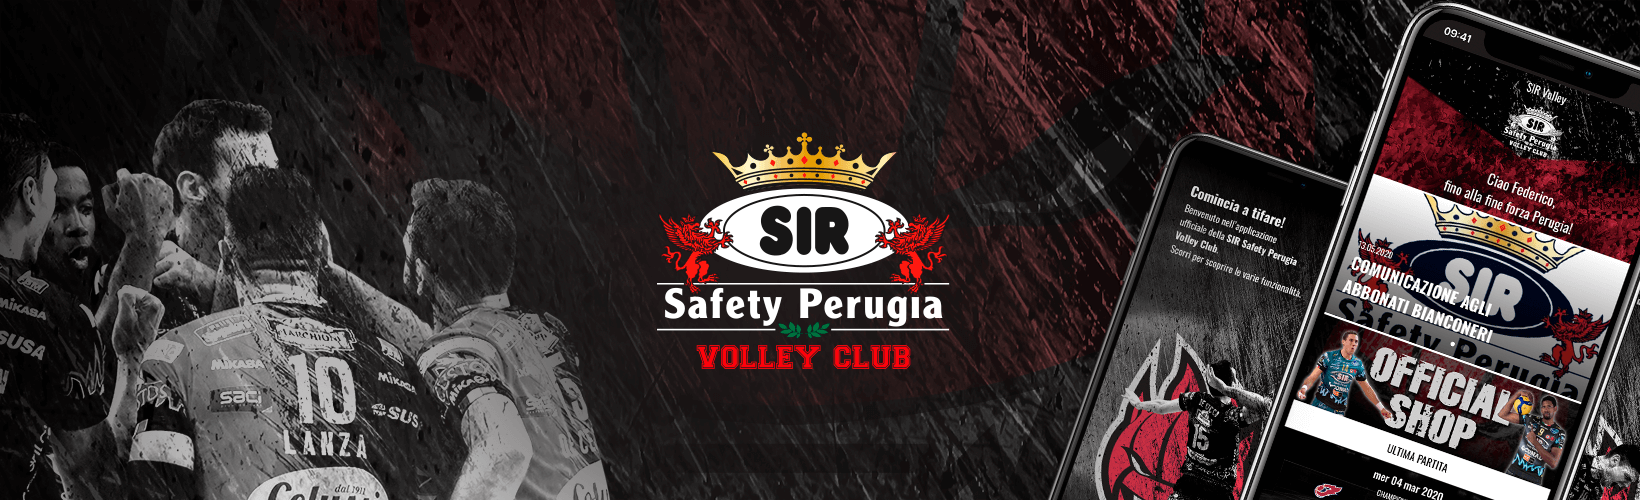 sir-safety-perugia